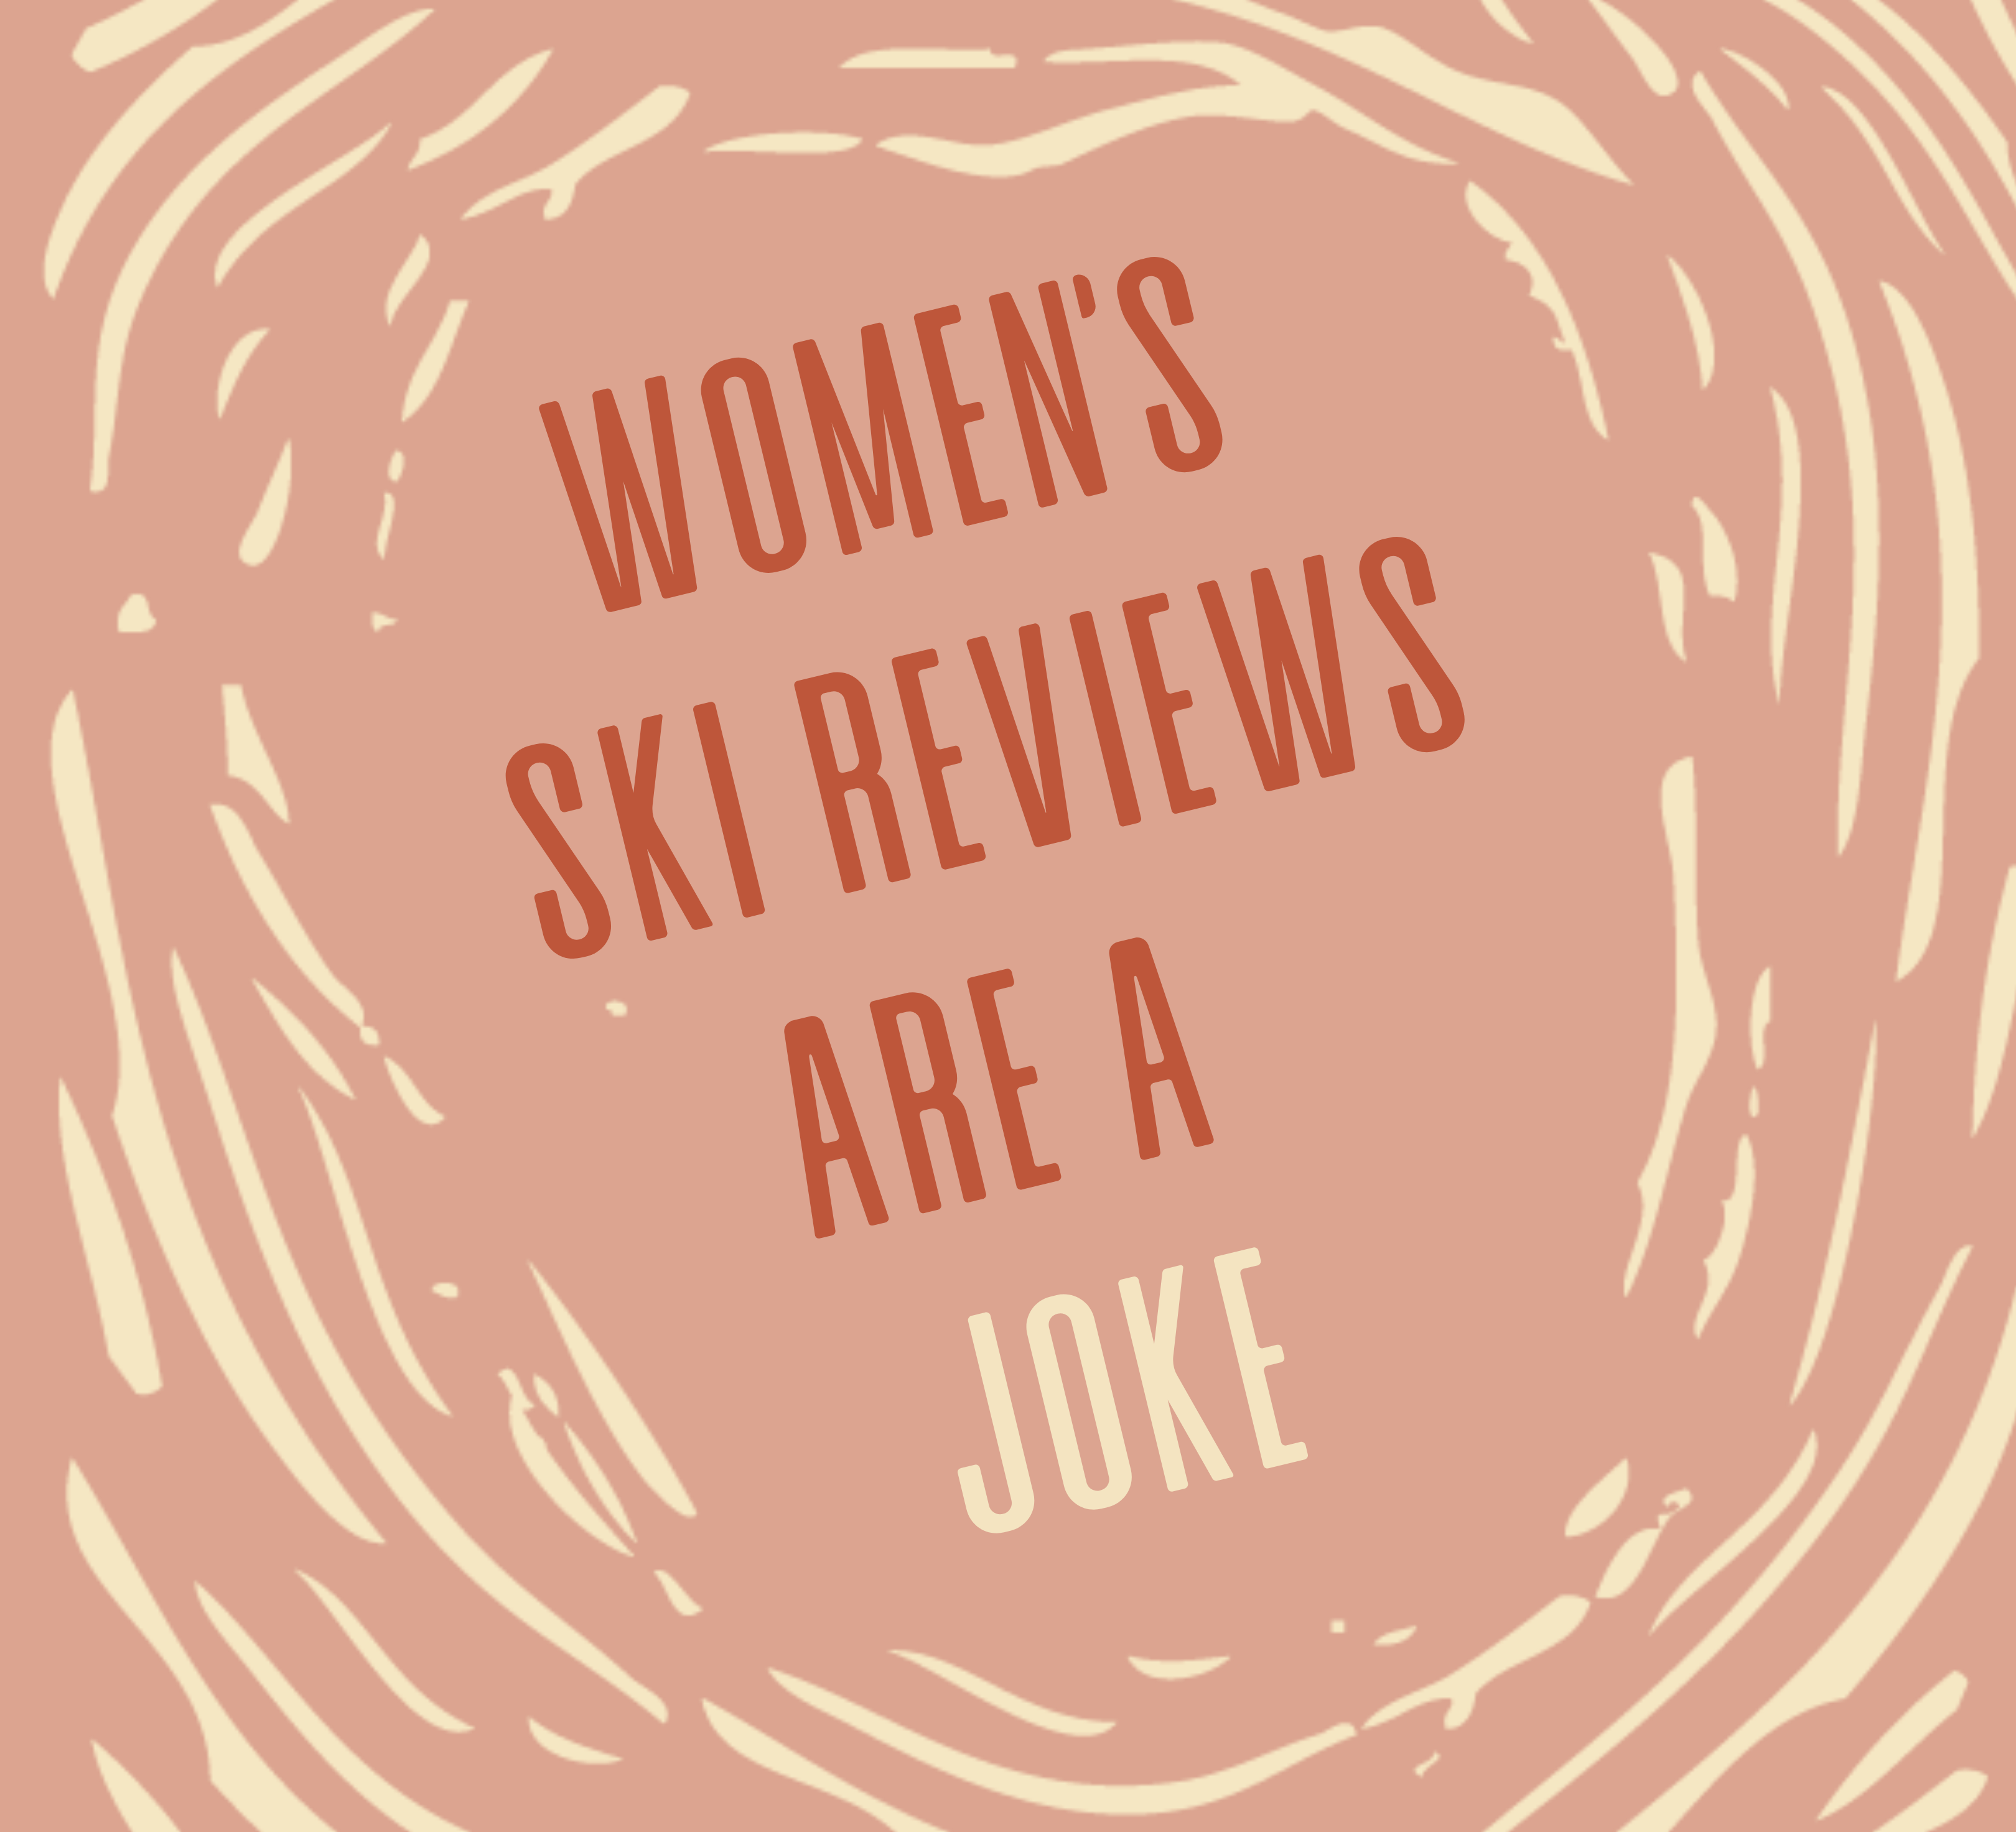 Women's Ski Reviews Are A Joke